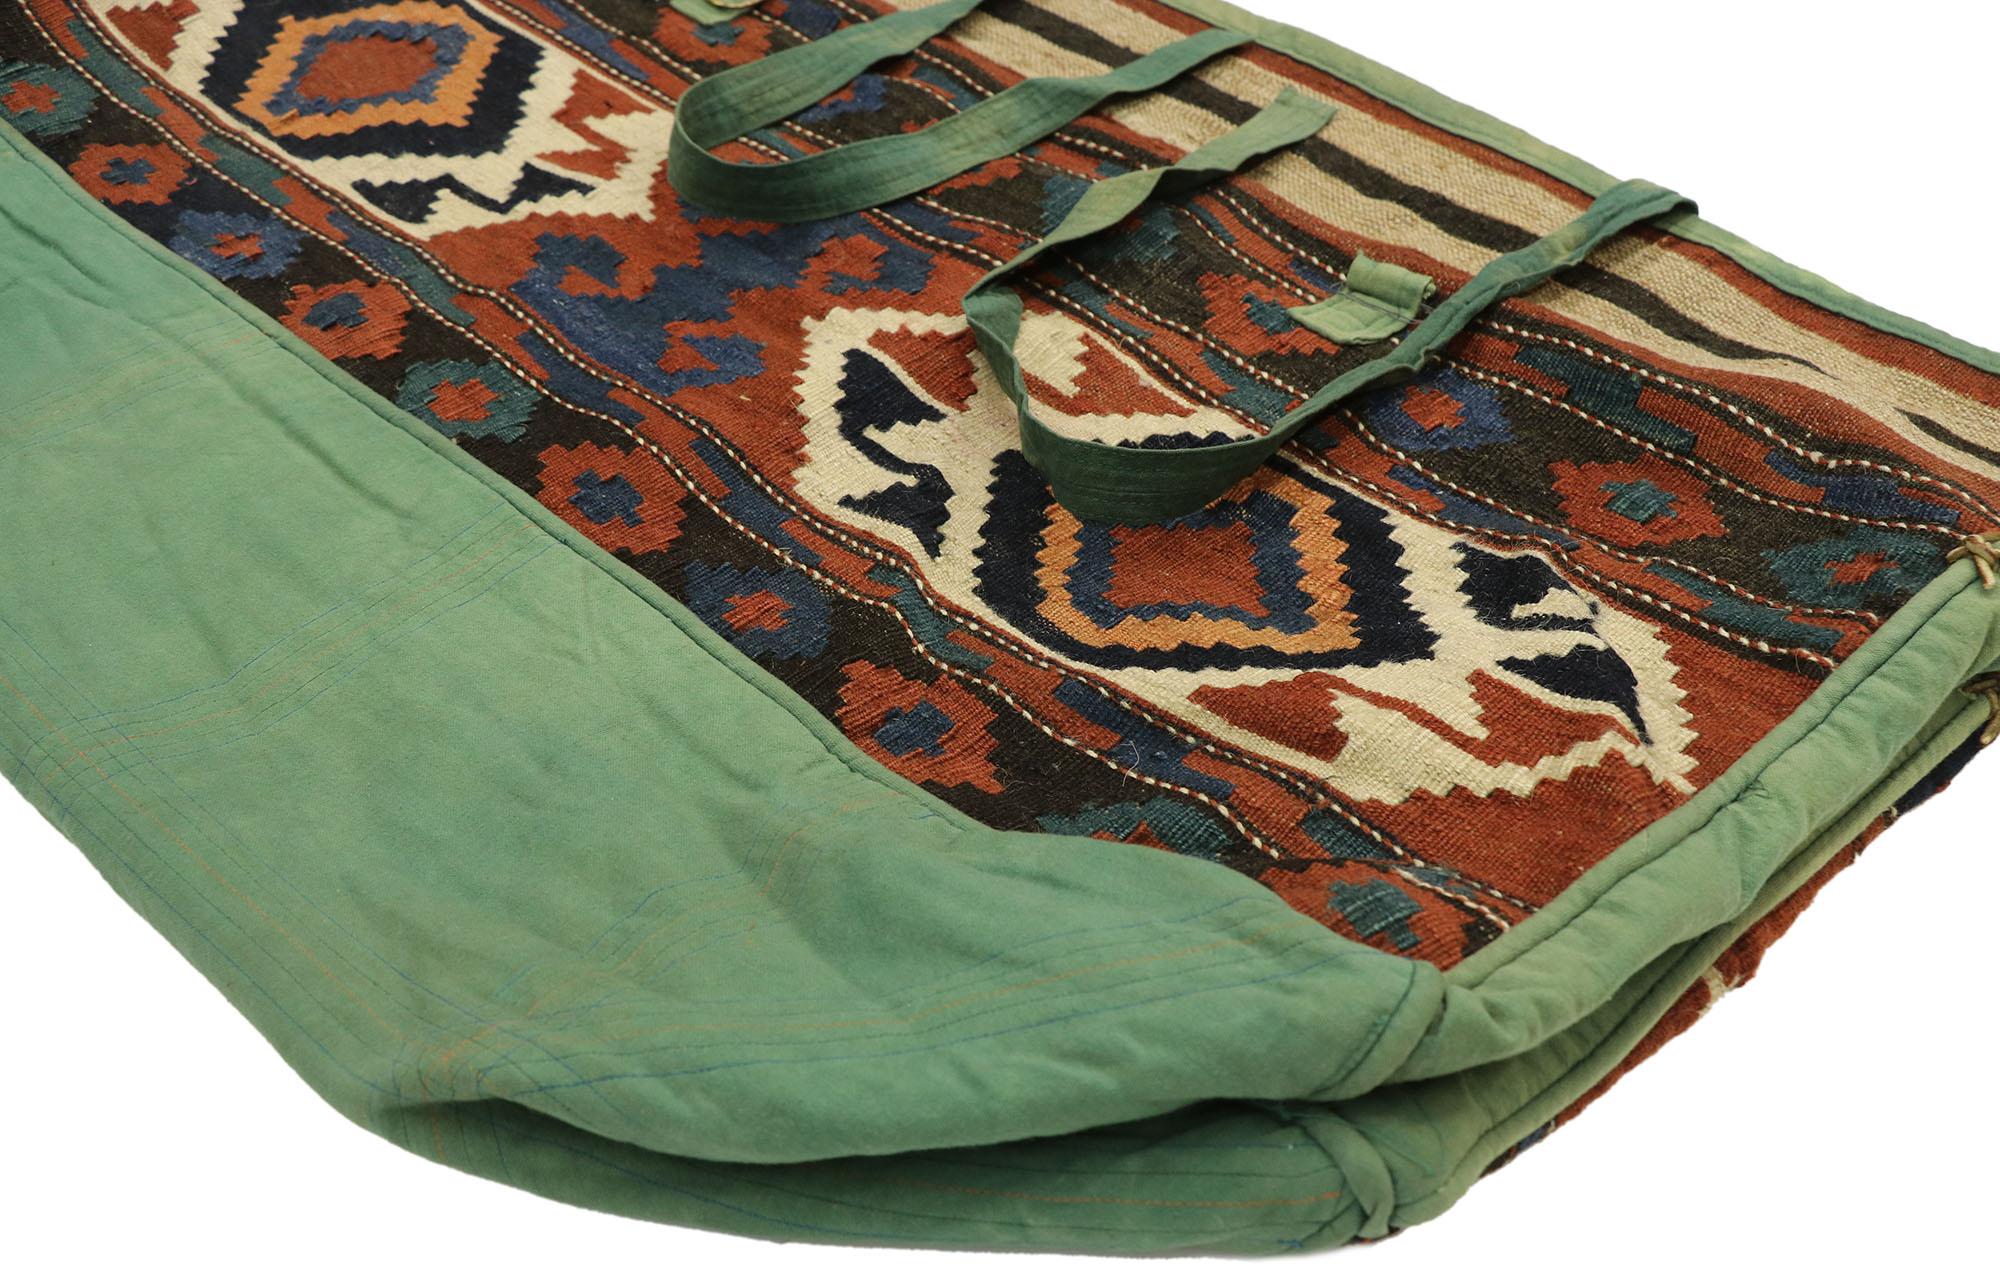 70472, antike kaukasische Kelim-Tasche. Dieser funktionelle antike kaukasische Rucksack ist reich an Stammessymbolik und zeigt eine handgewebte Kelim-Taschenfront auf einem abgenutzten und von der Sonne ausgebleichten Stoffbeutel. Auf der